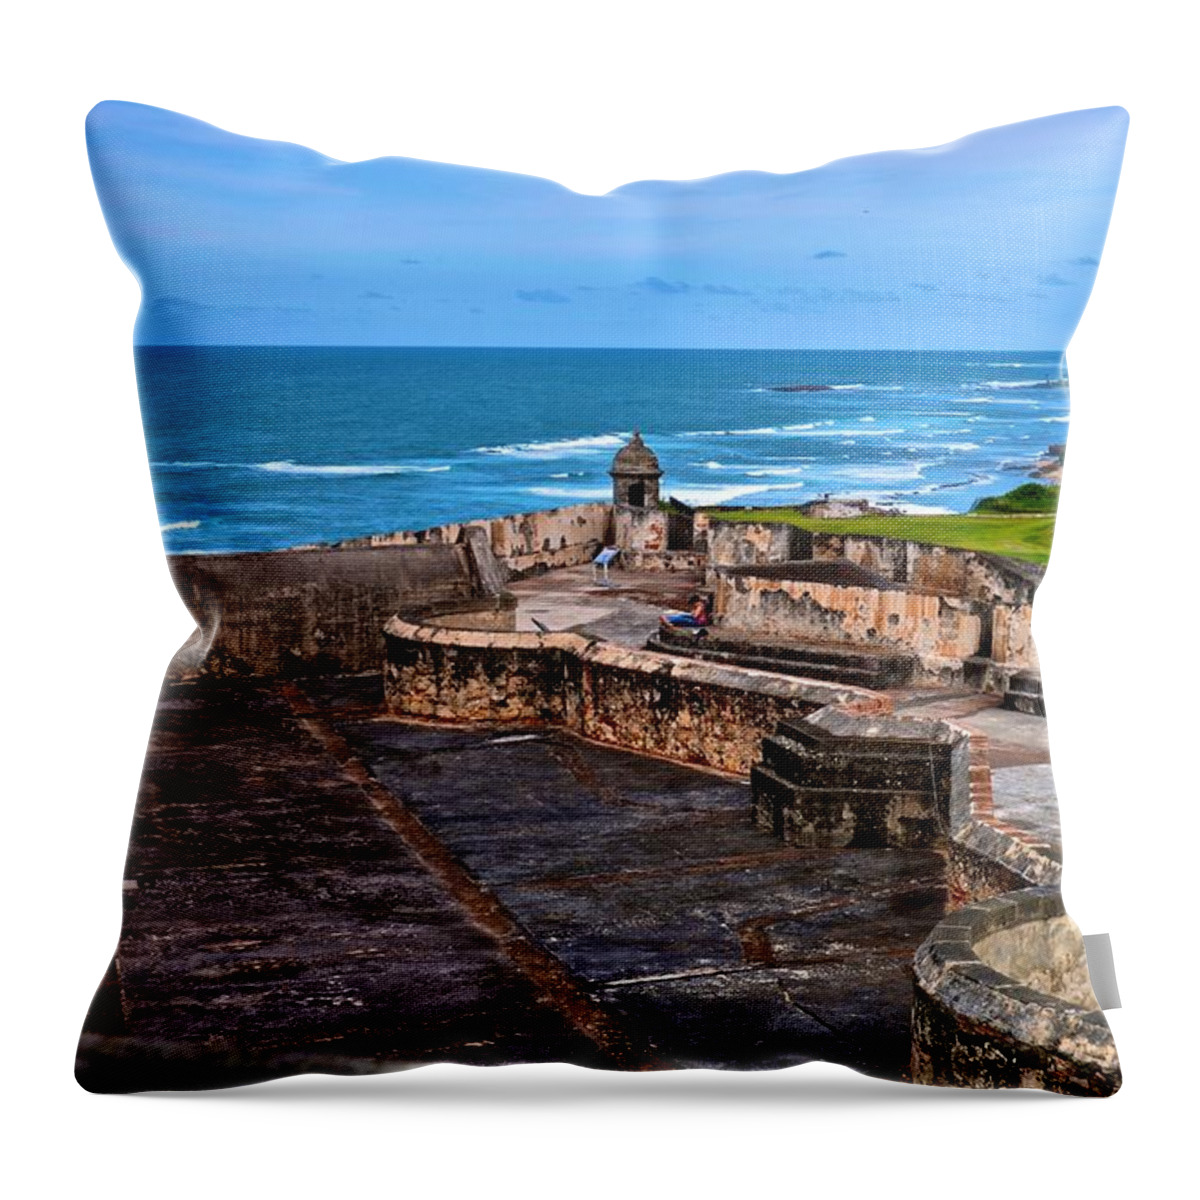 Puerto Rico Throw Pillow featuring the photograph Atlantic Ocean from Fort San Cristobal by Ricardo J Ruiz de Porras